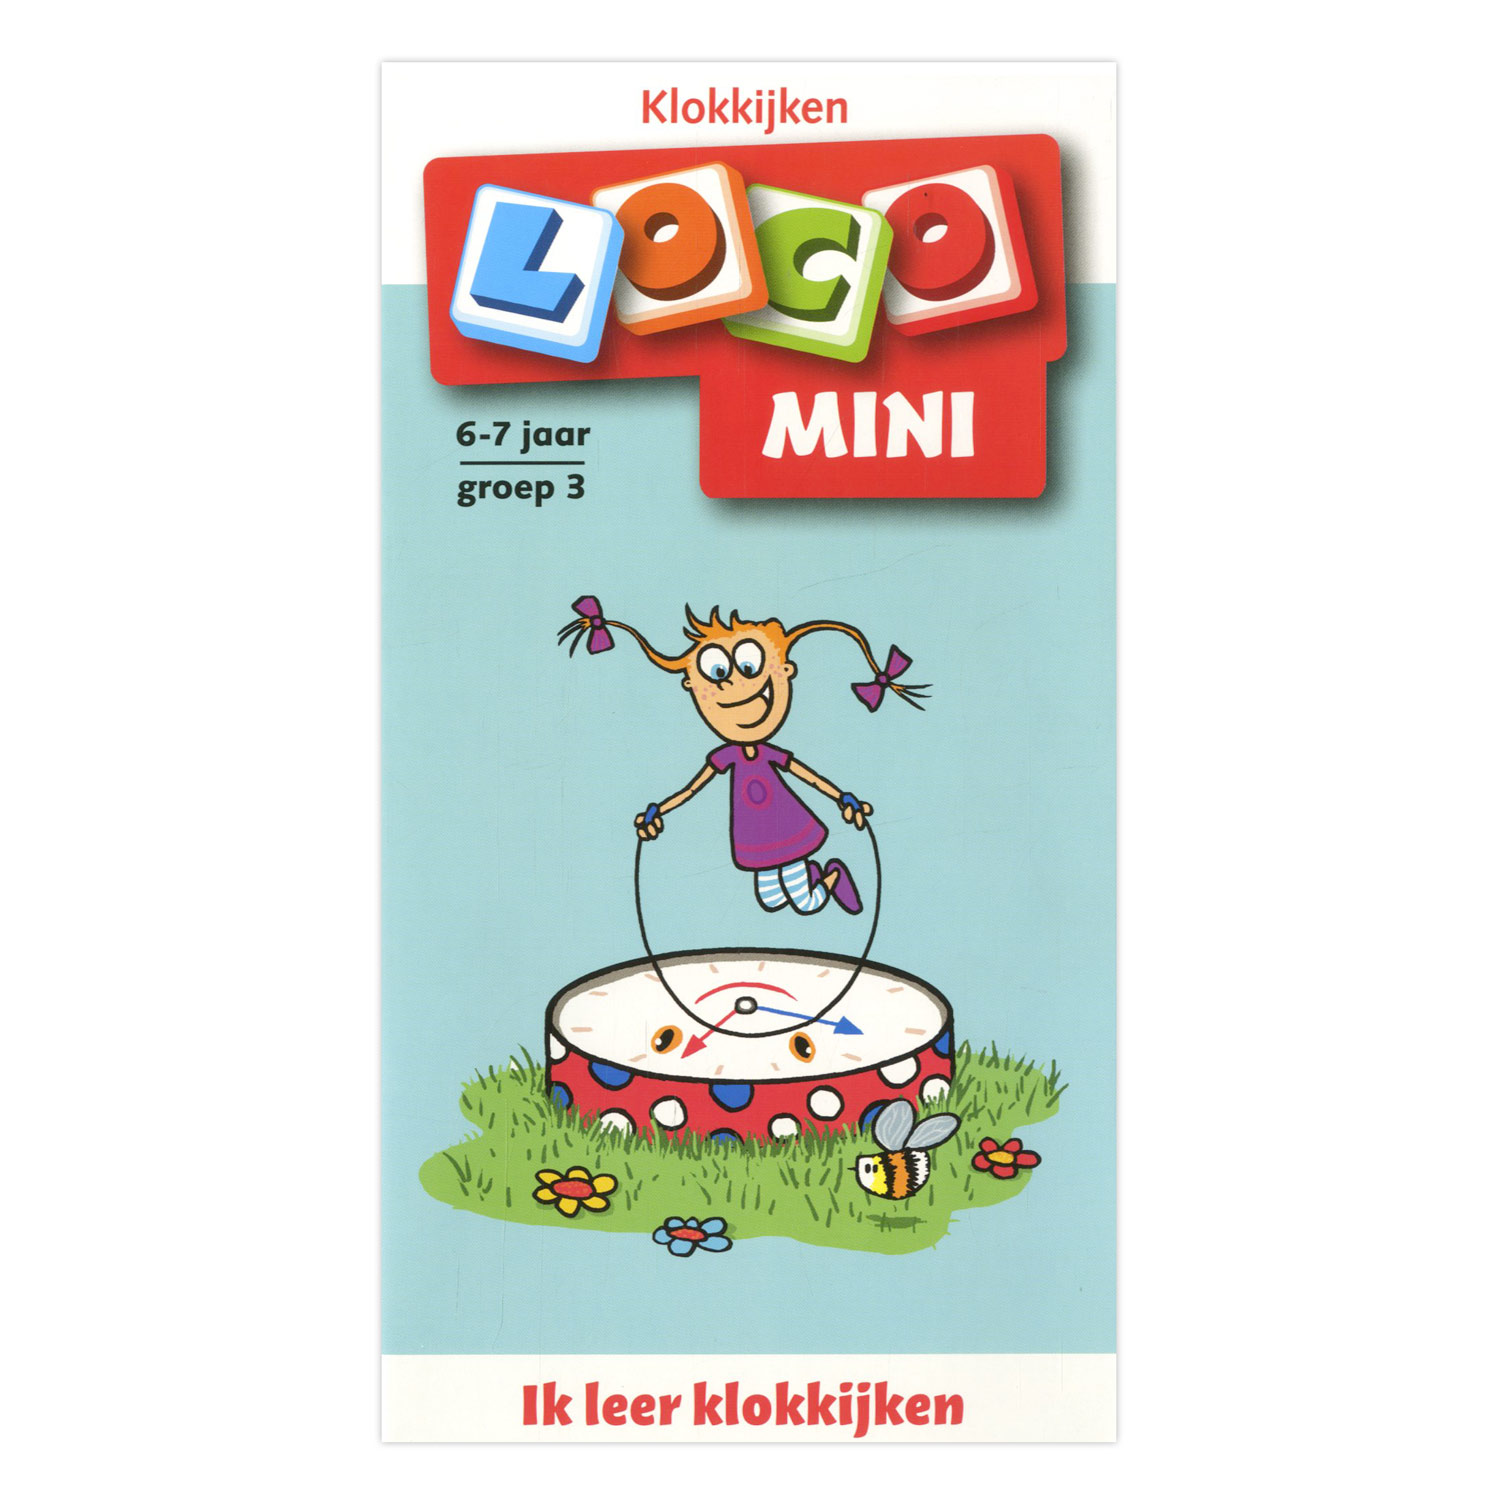 Verwonderend Loco Mini Ik leer Klokkijken - Groep 3 (6-7 jr.) online kopen QV-61